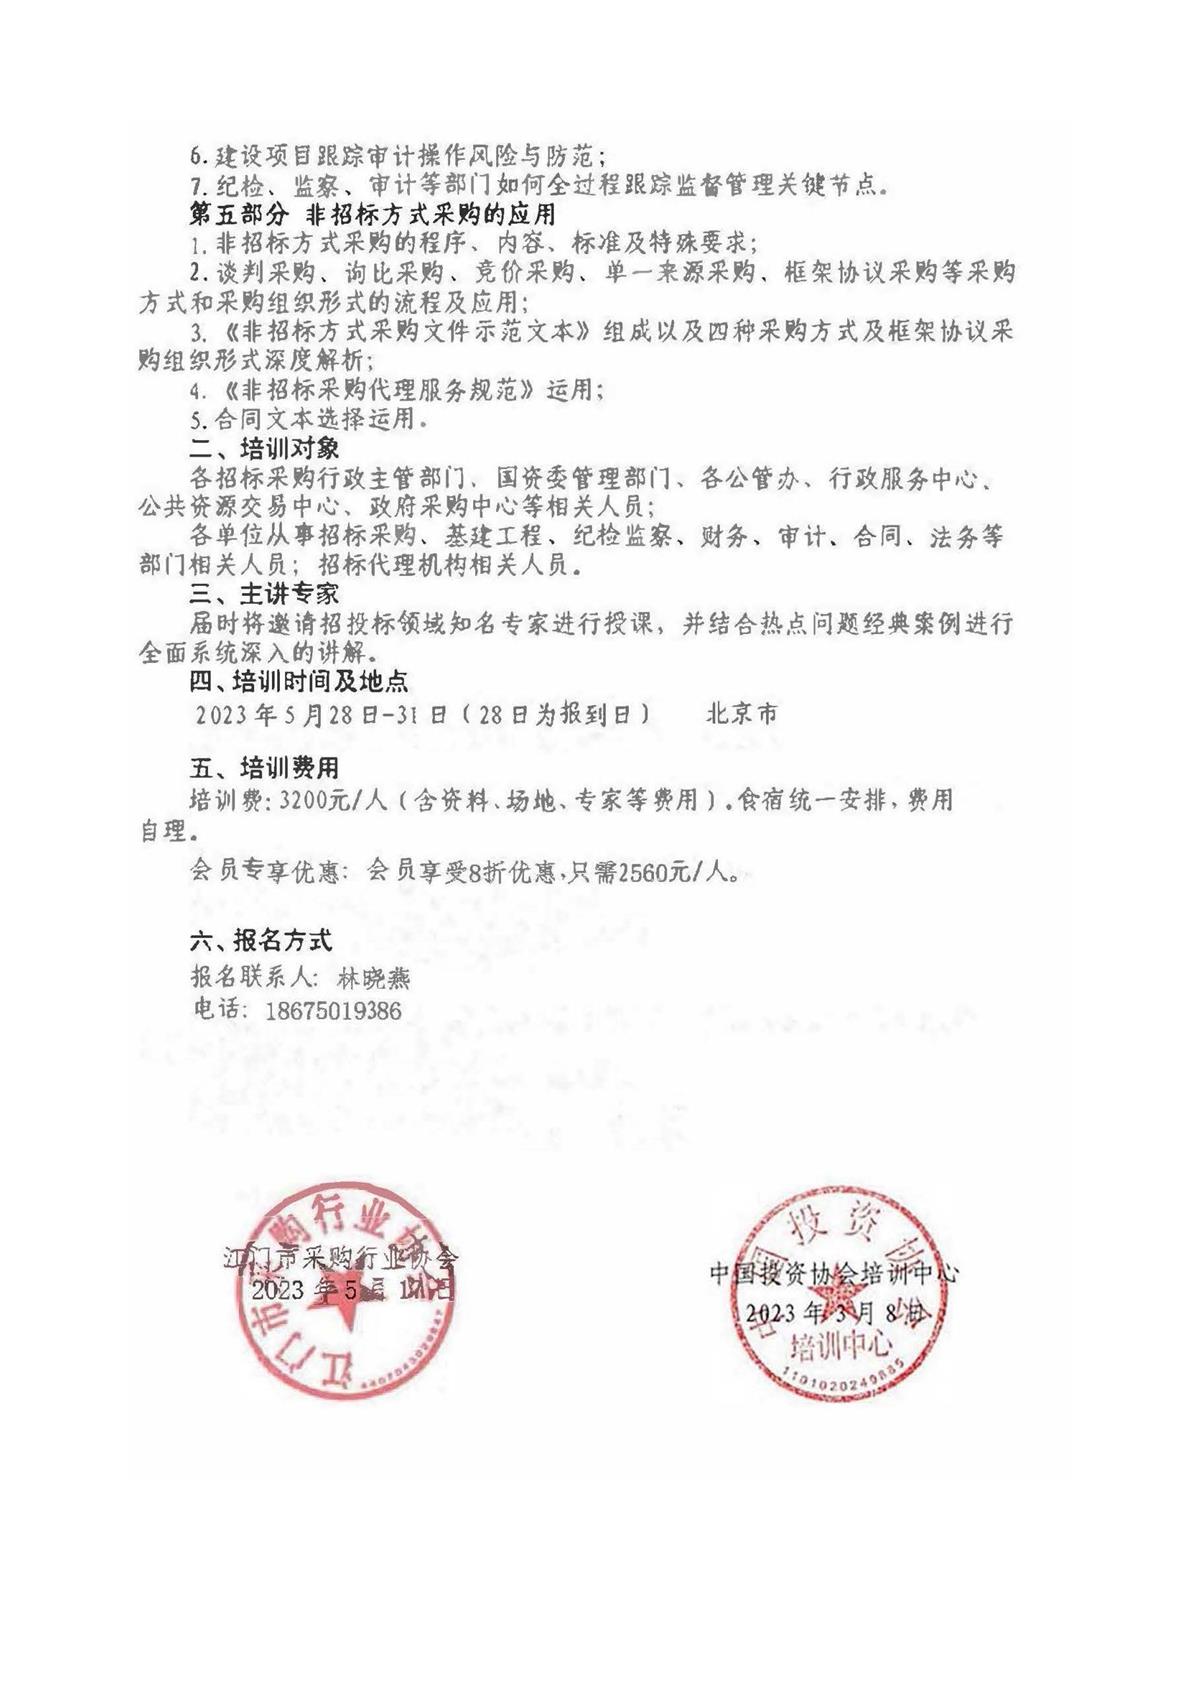 05.28-31北京招标采购培训详情_页面_3.jpg